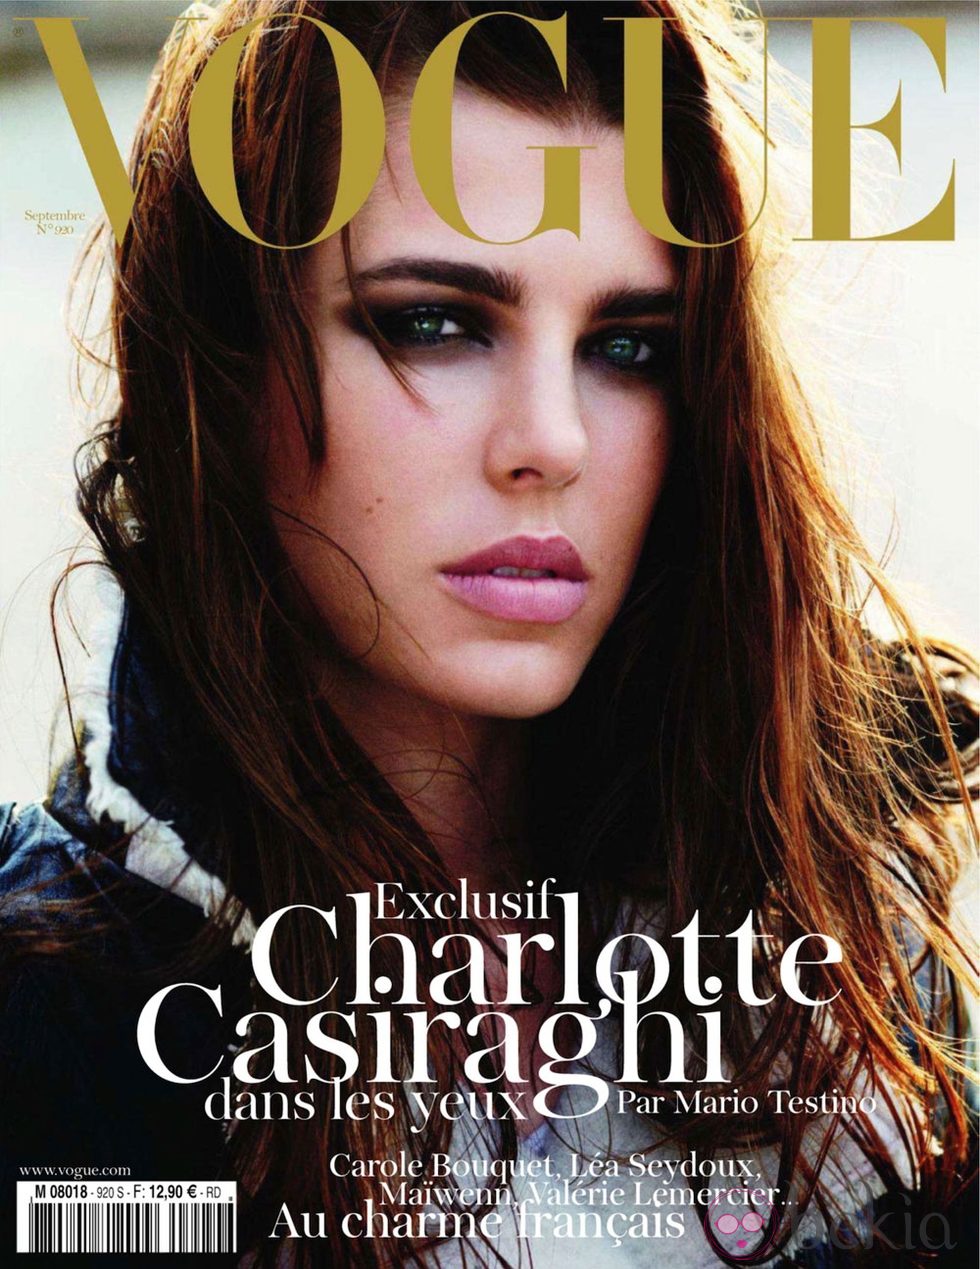 Carlota Casiraghi, portada de Vogue Francia en septiembre de 2011